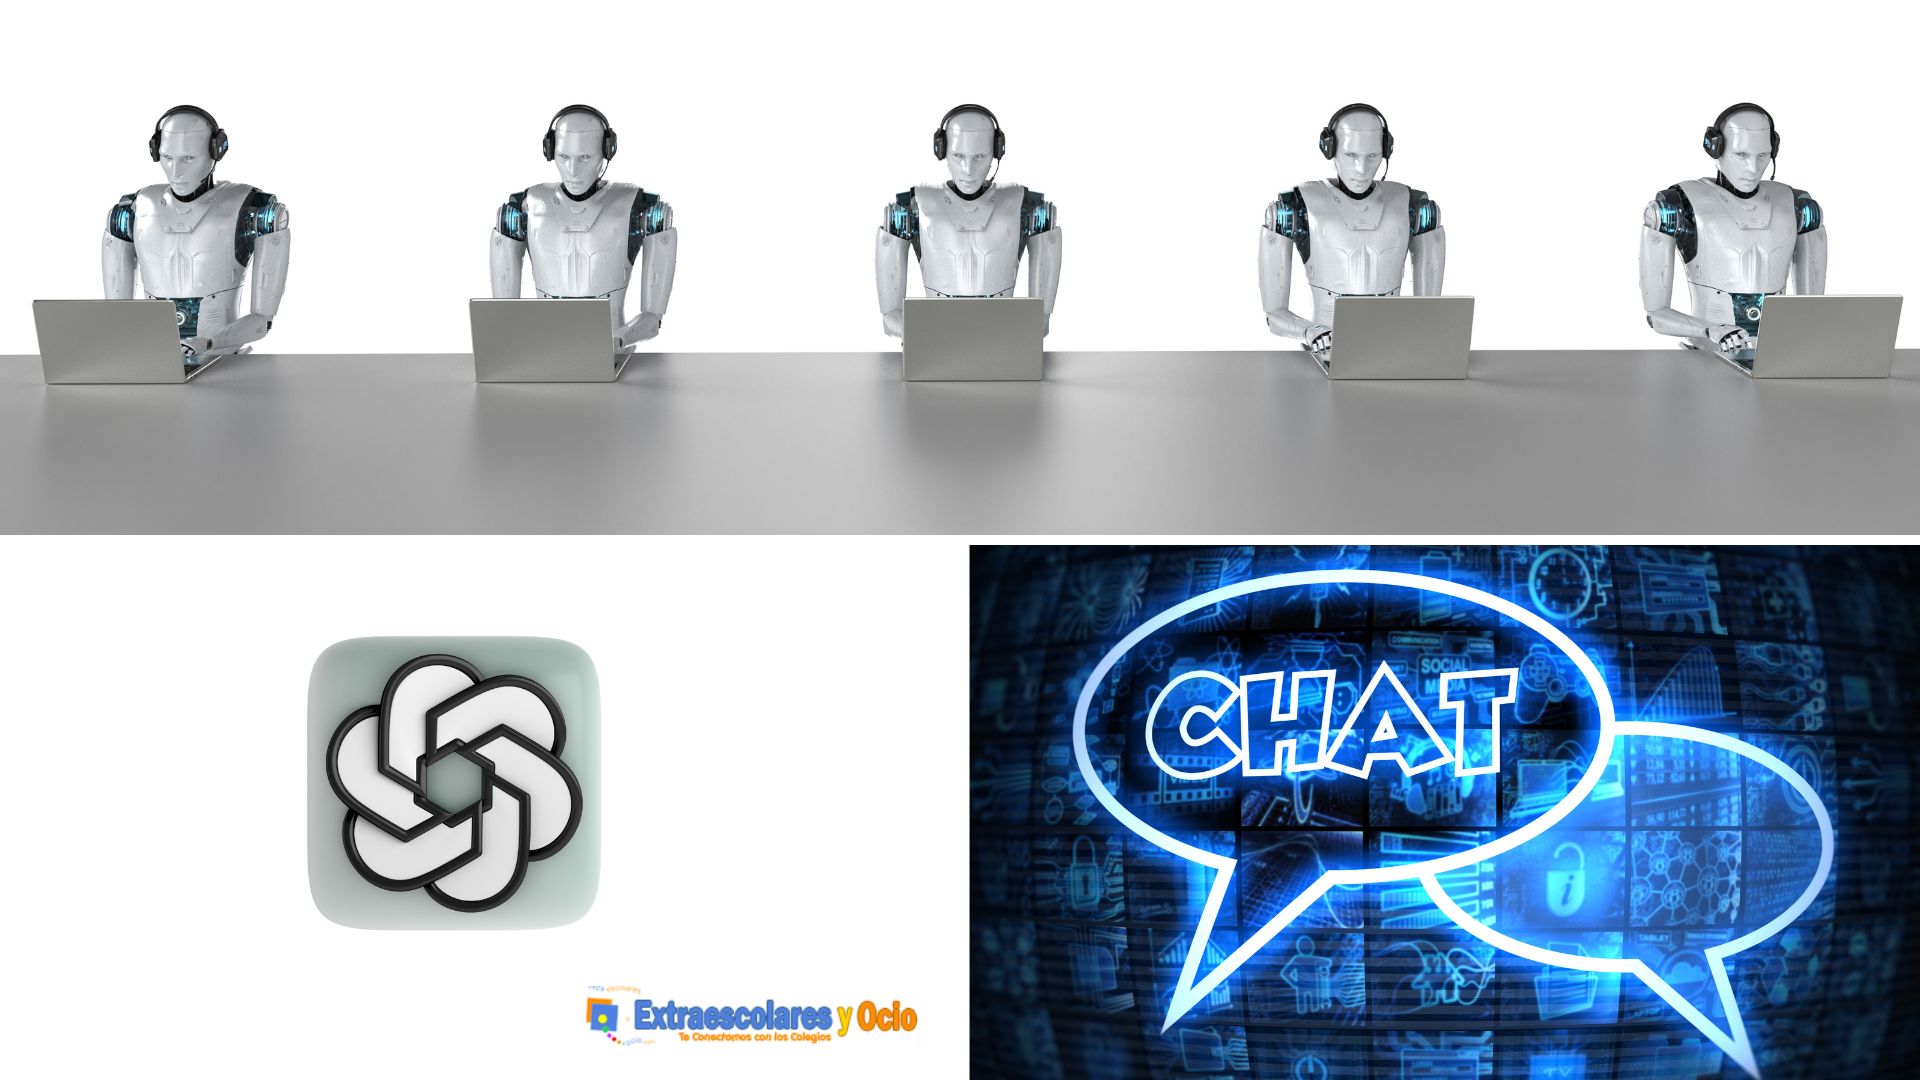 Descubre cómo Chat GPT, la herramienta de inteligencia artificial, puede ayudarte en la educación y preparación de oposiciones.